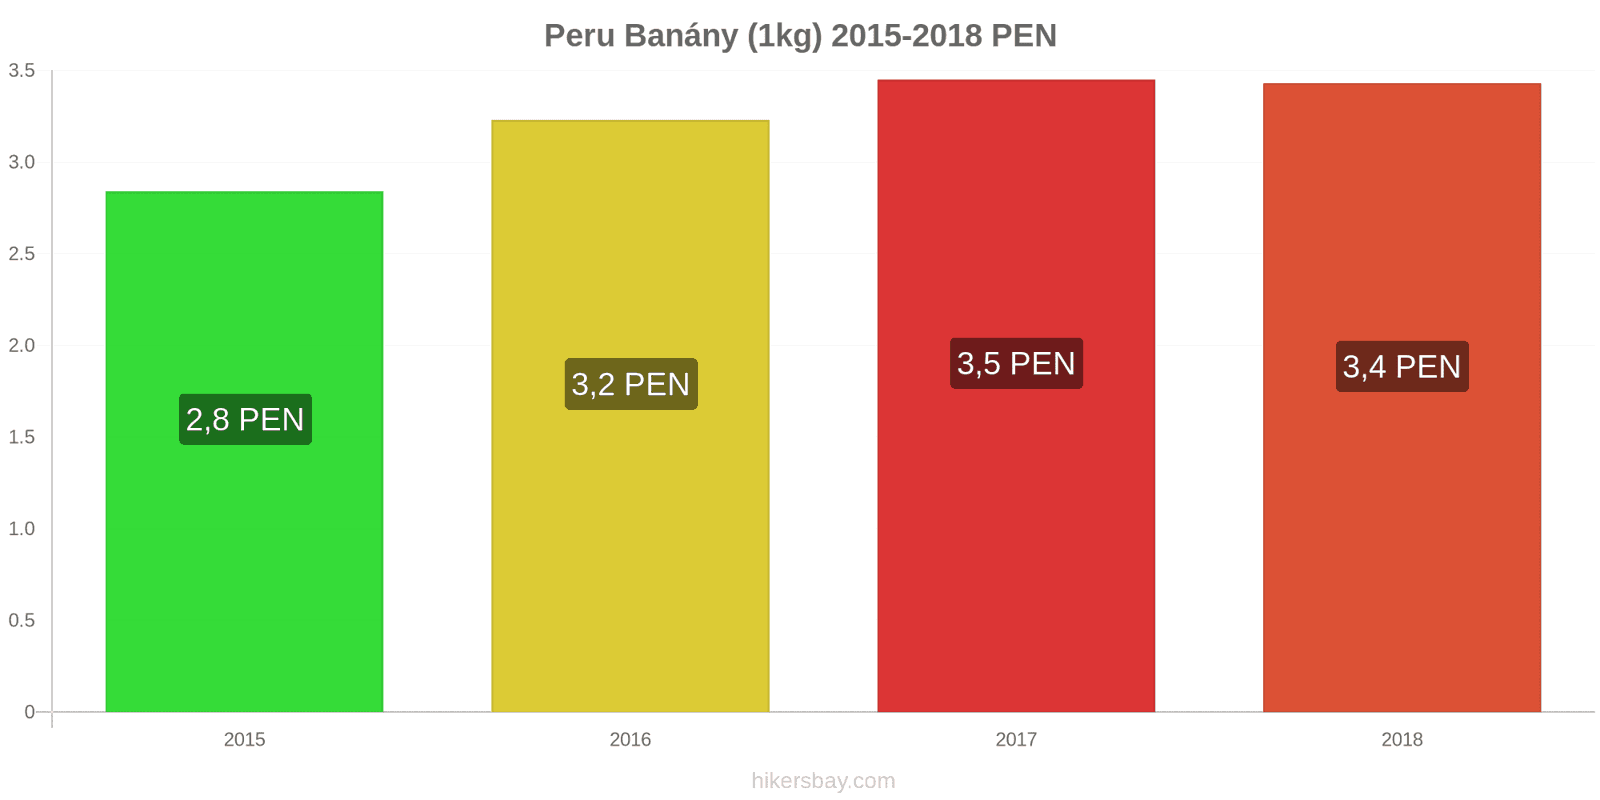 Peru změny cen Banány (1kg) hikersbay.com